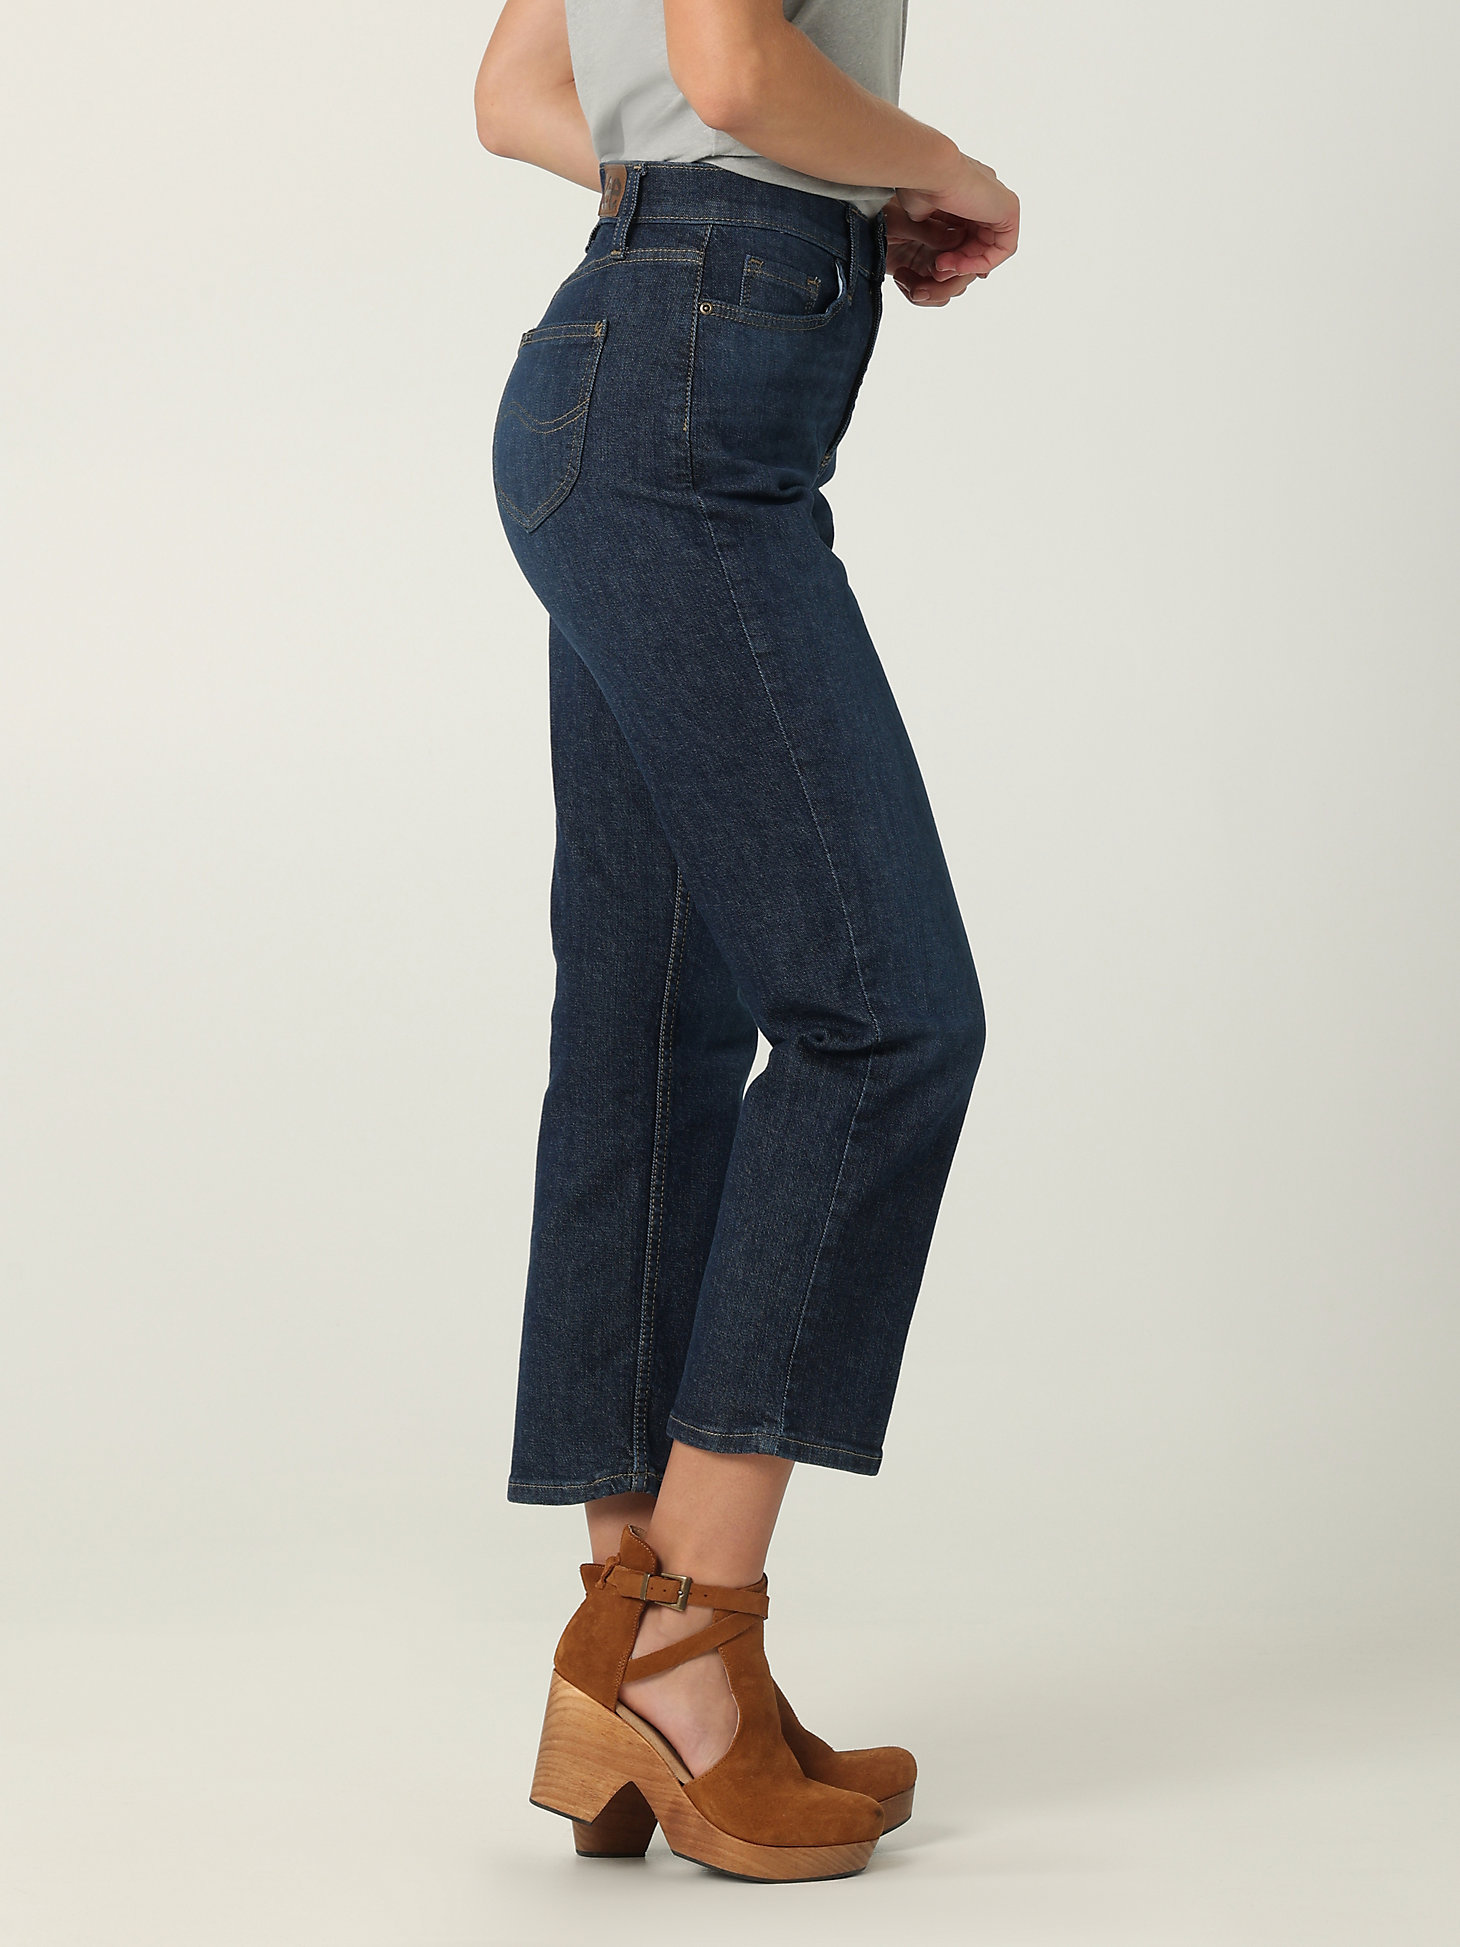 Women's Legendary High Rise Vintage Straight Jean in Inner Strength alternative view 2